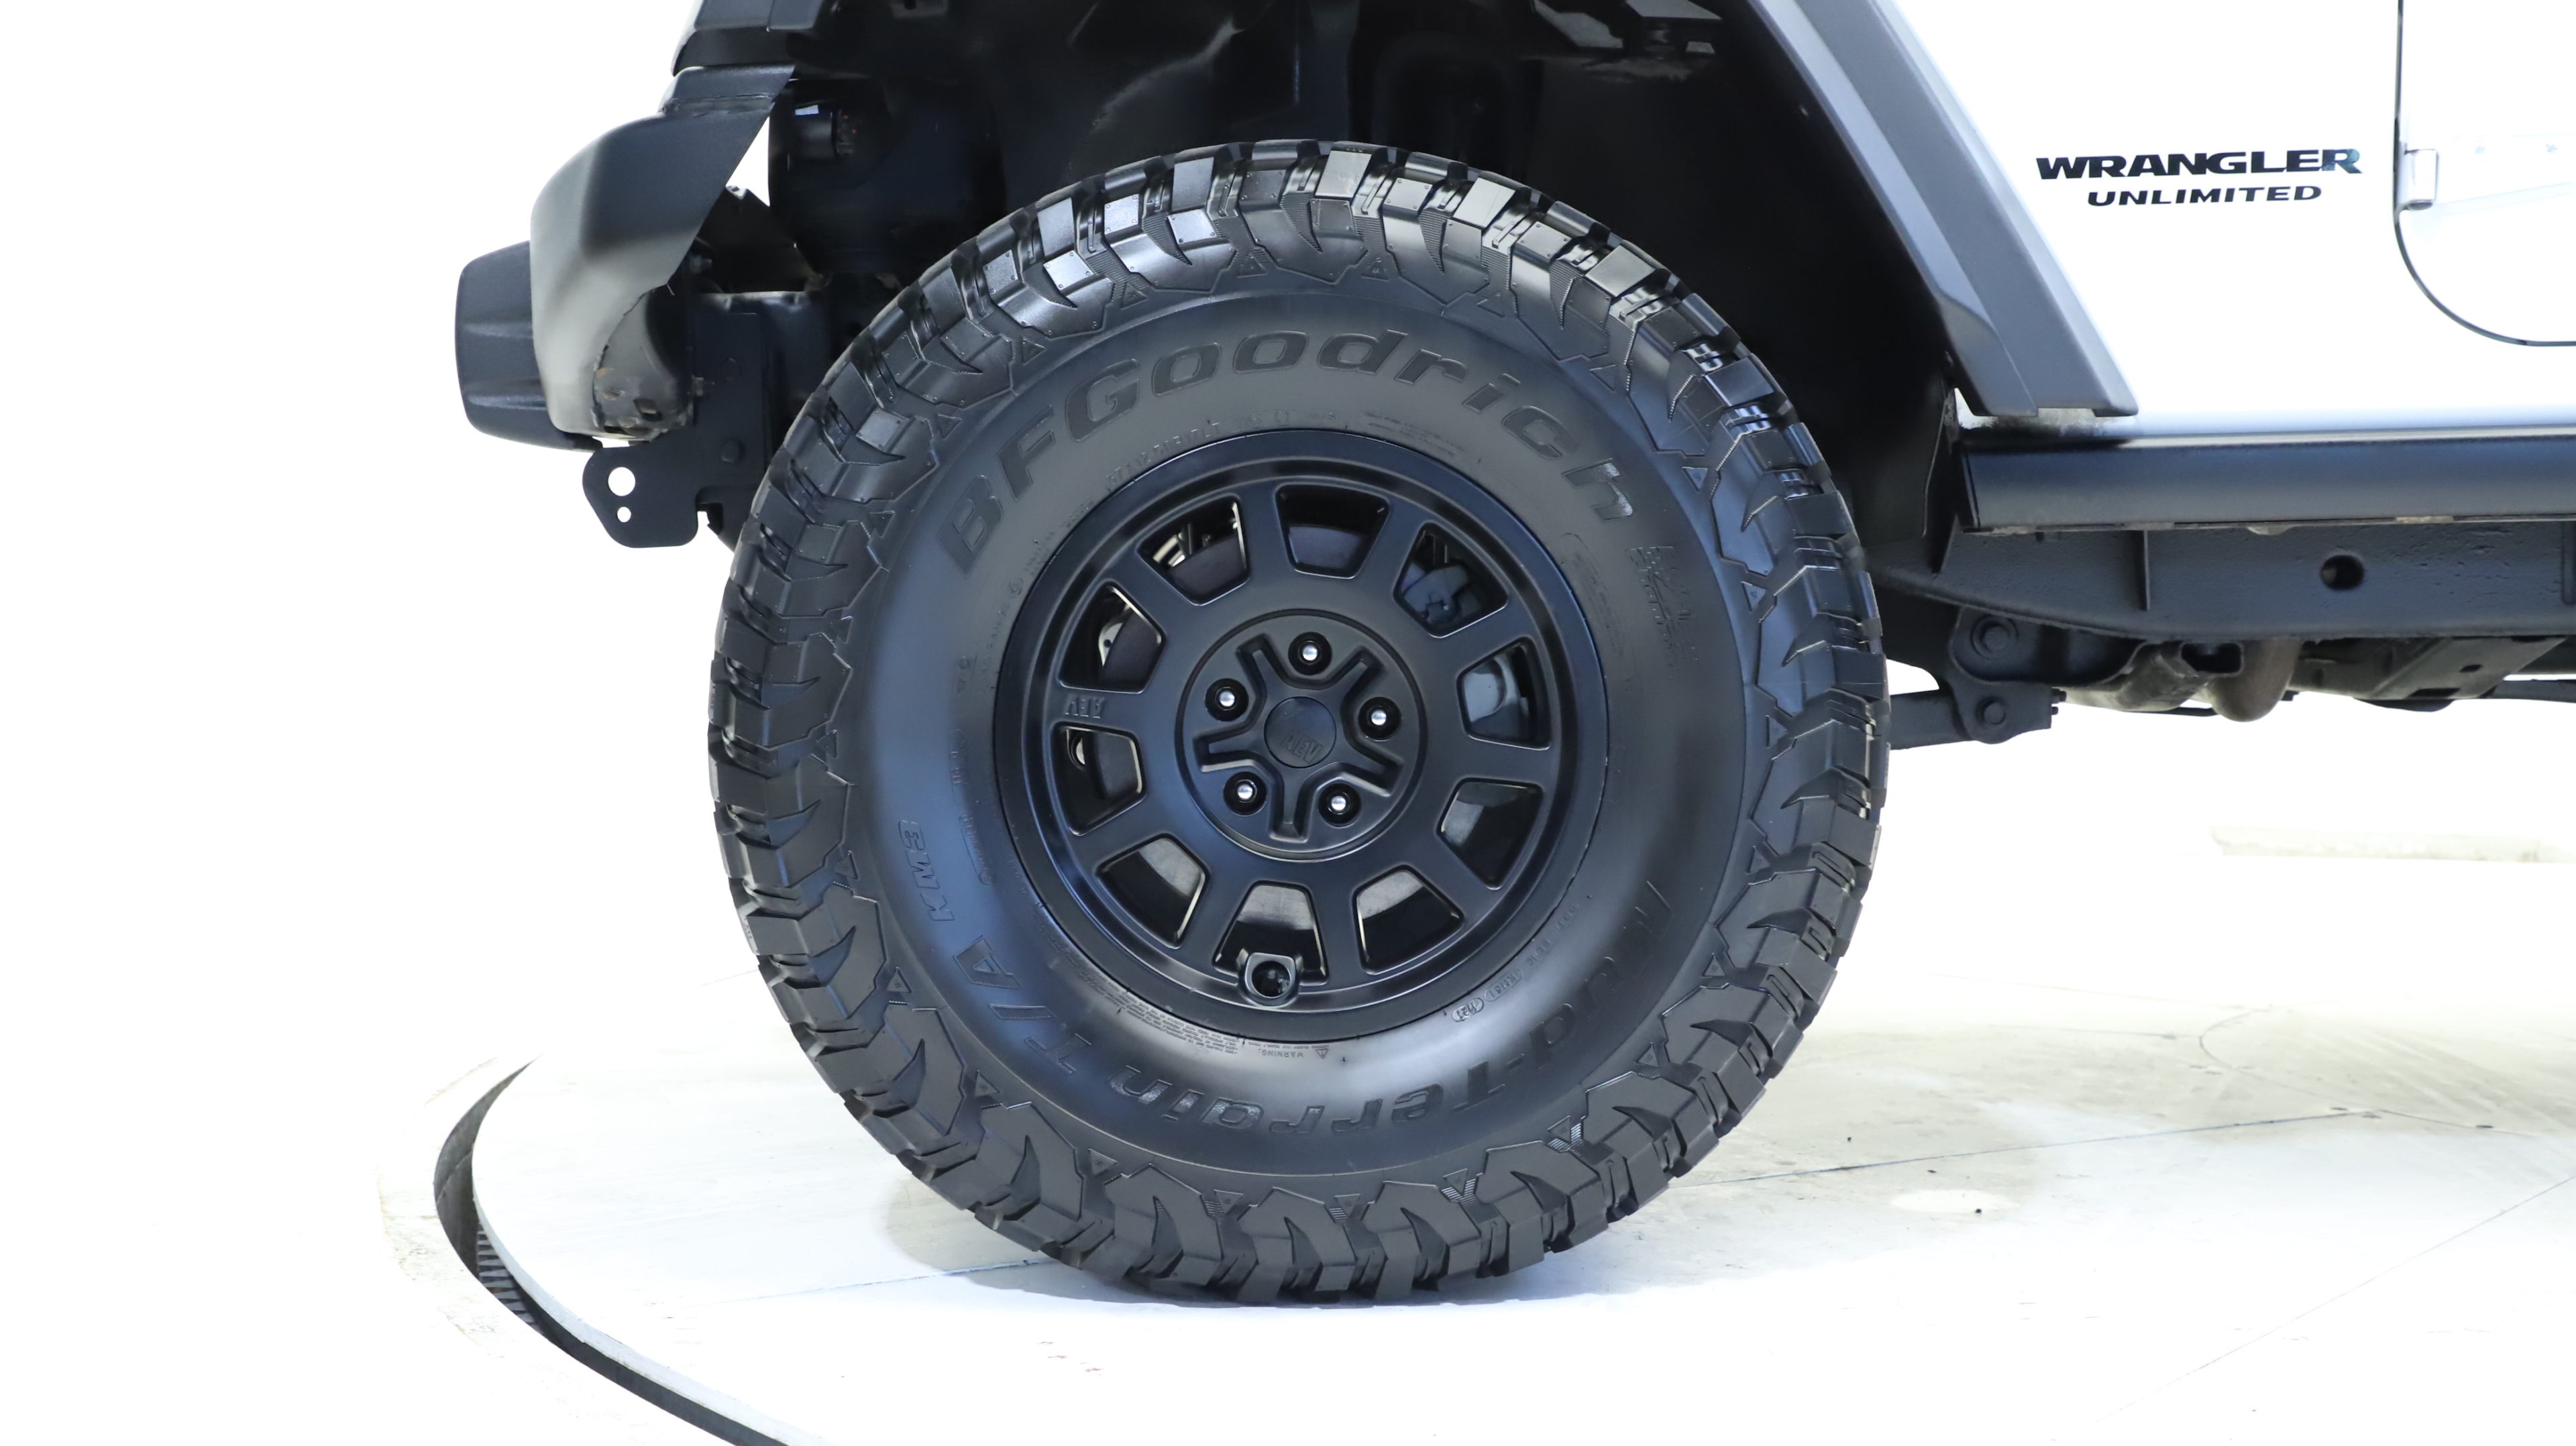 Zwei Tür Jeep Wrangler Rubicon hob mit übergroßen Reifen für Trail